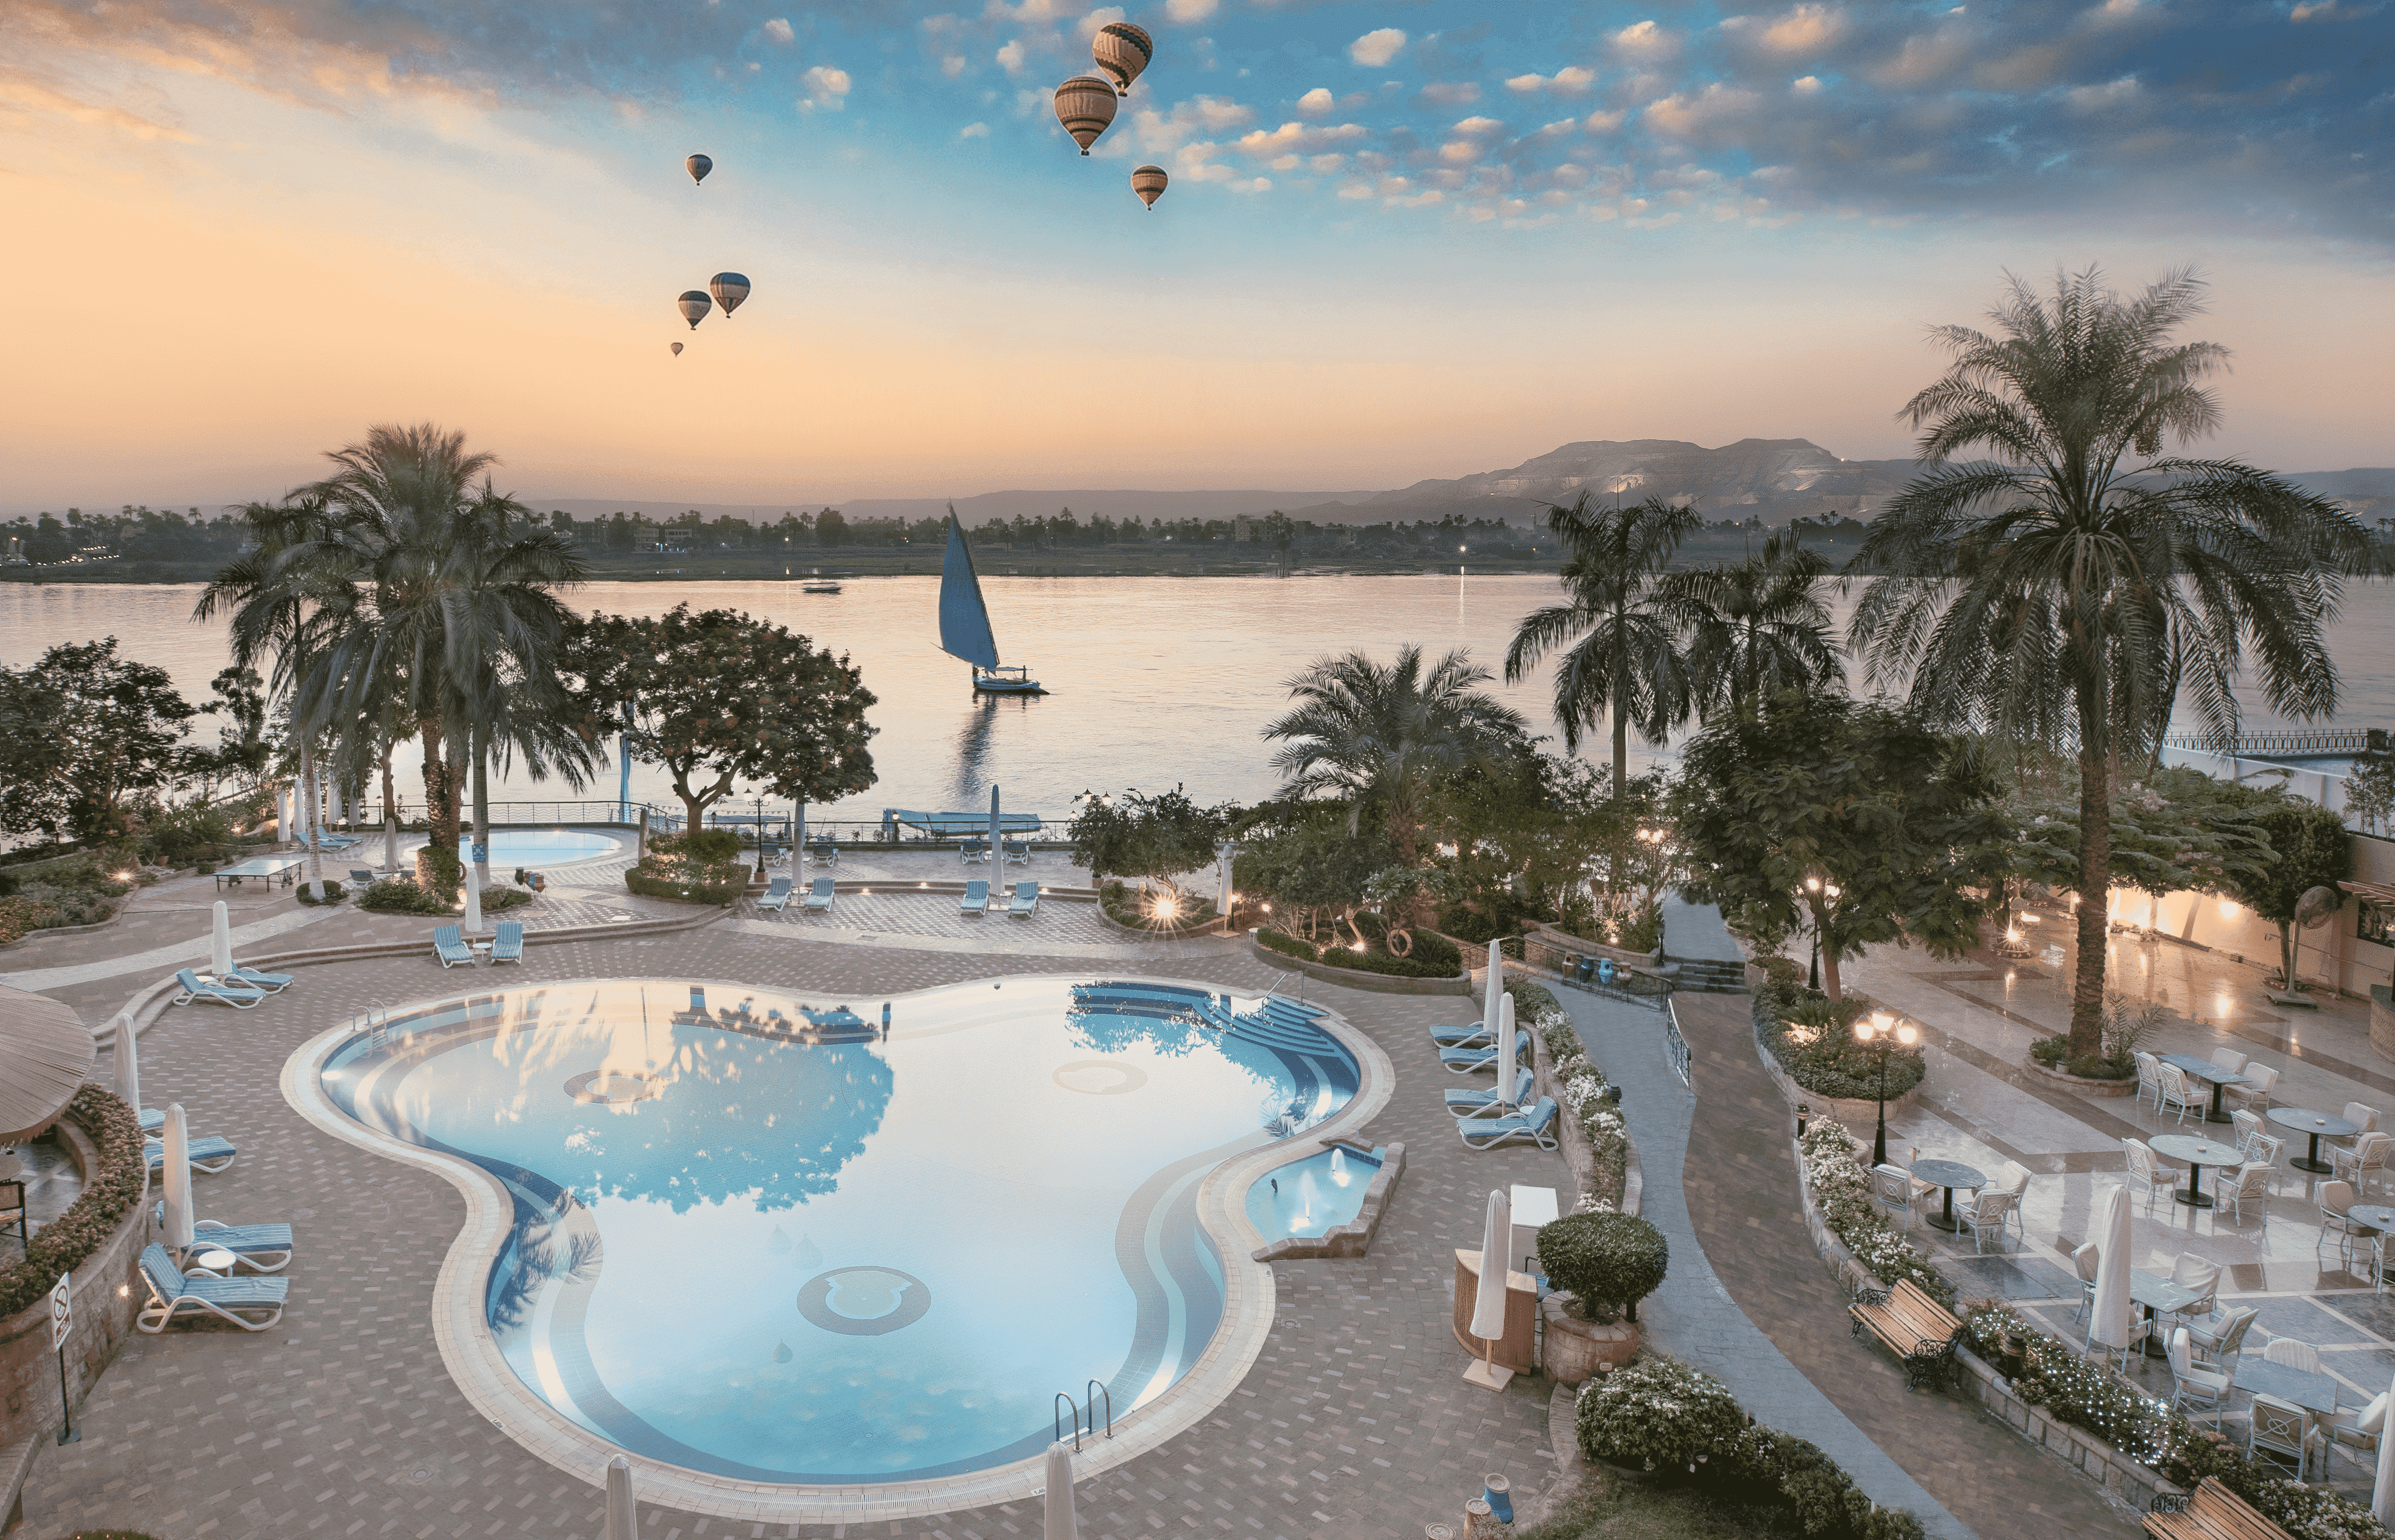 iLuxury Awards - Steigenberger Nile Palace Hotel Luxor